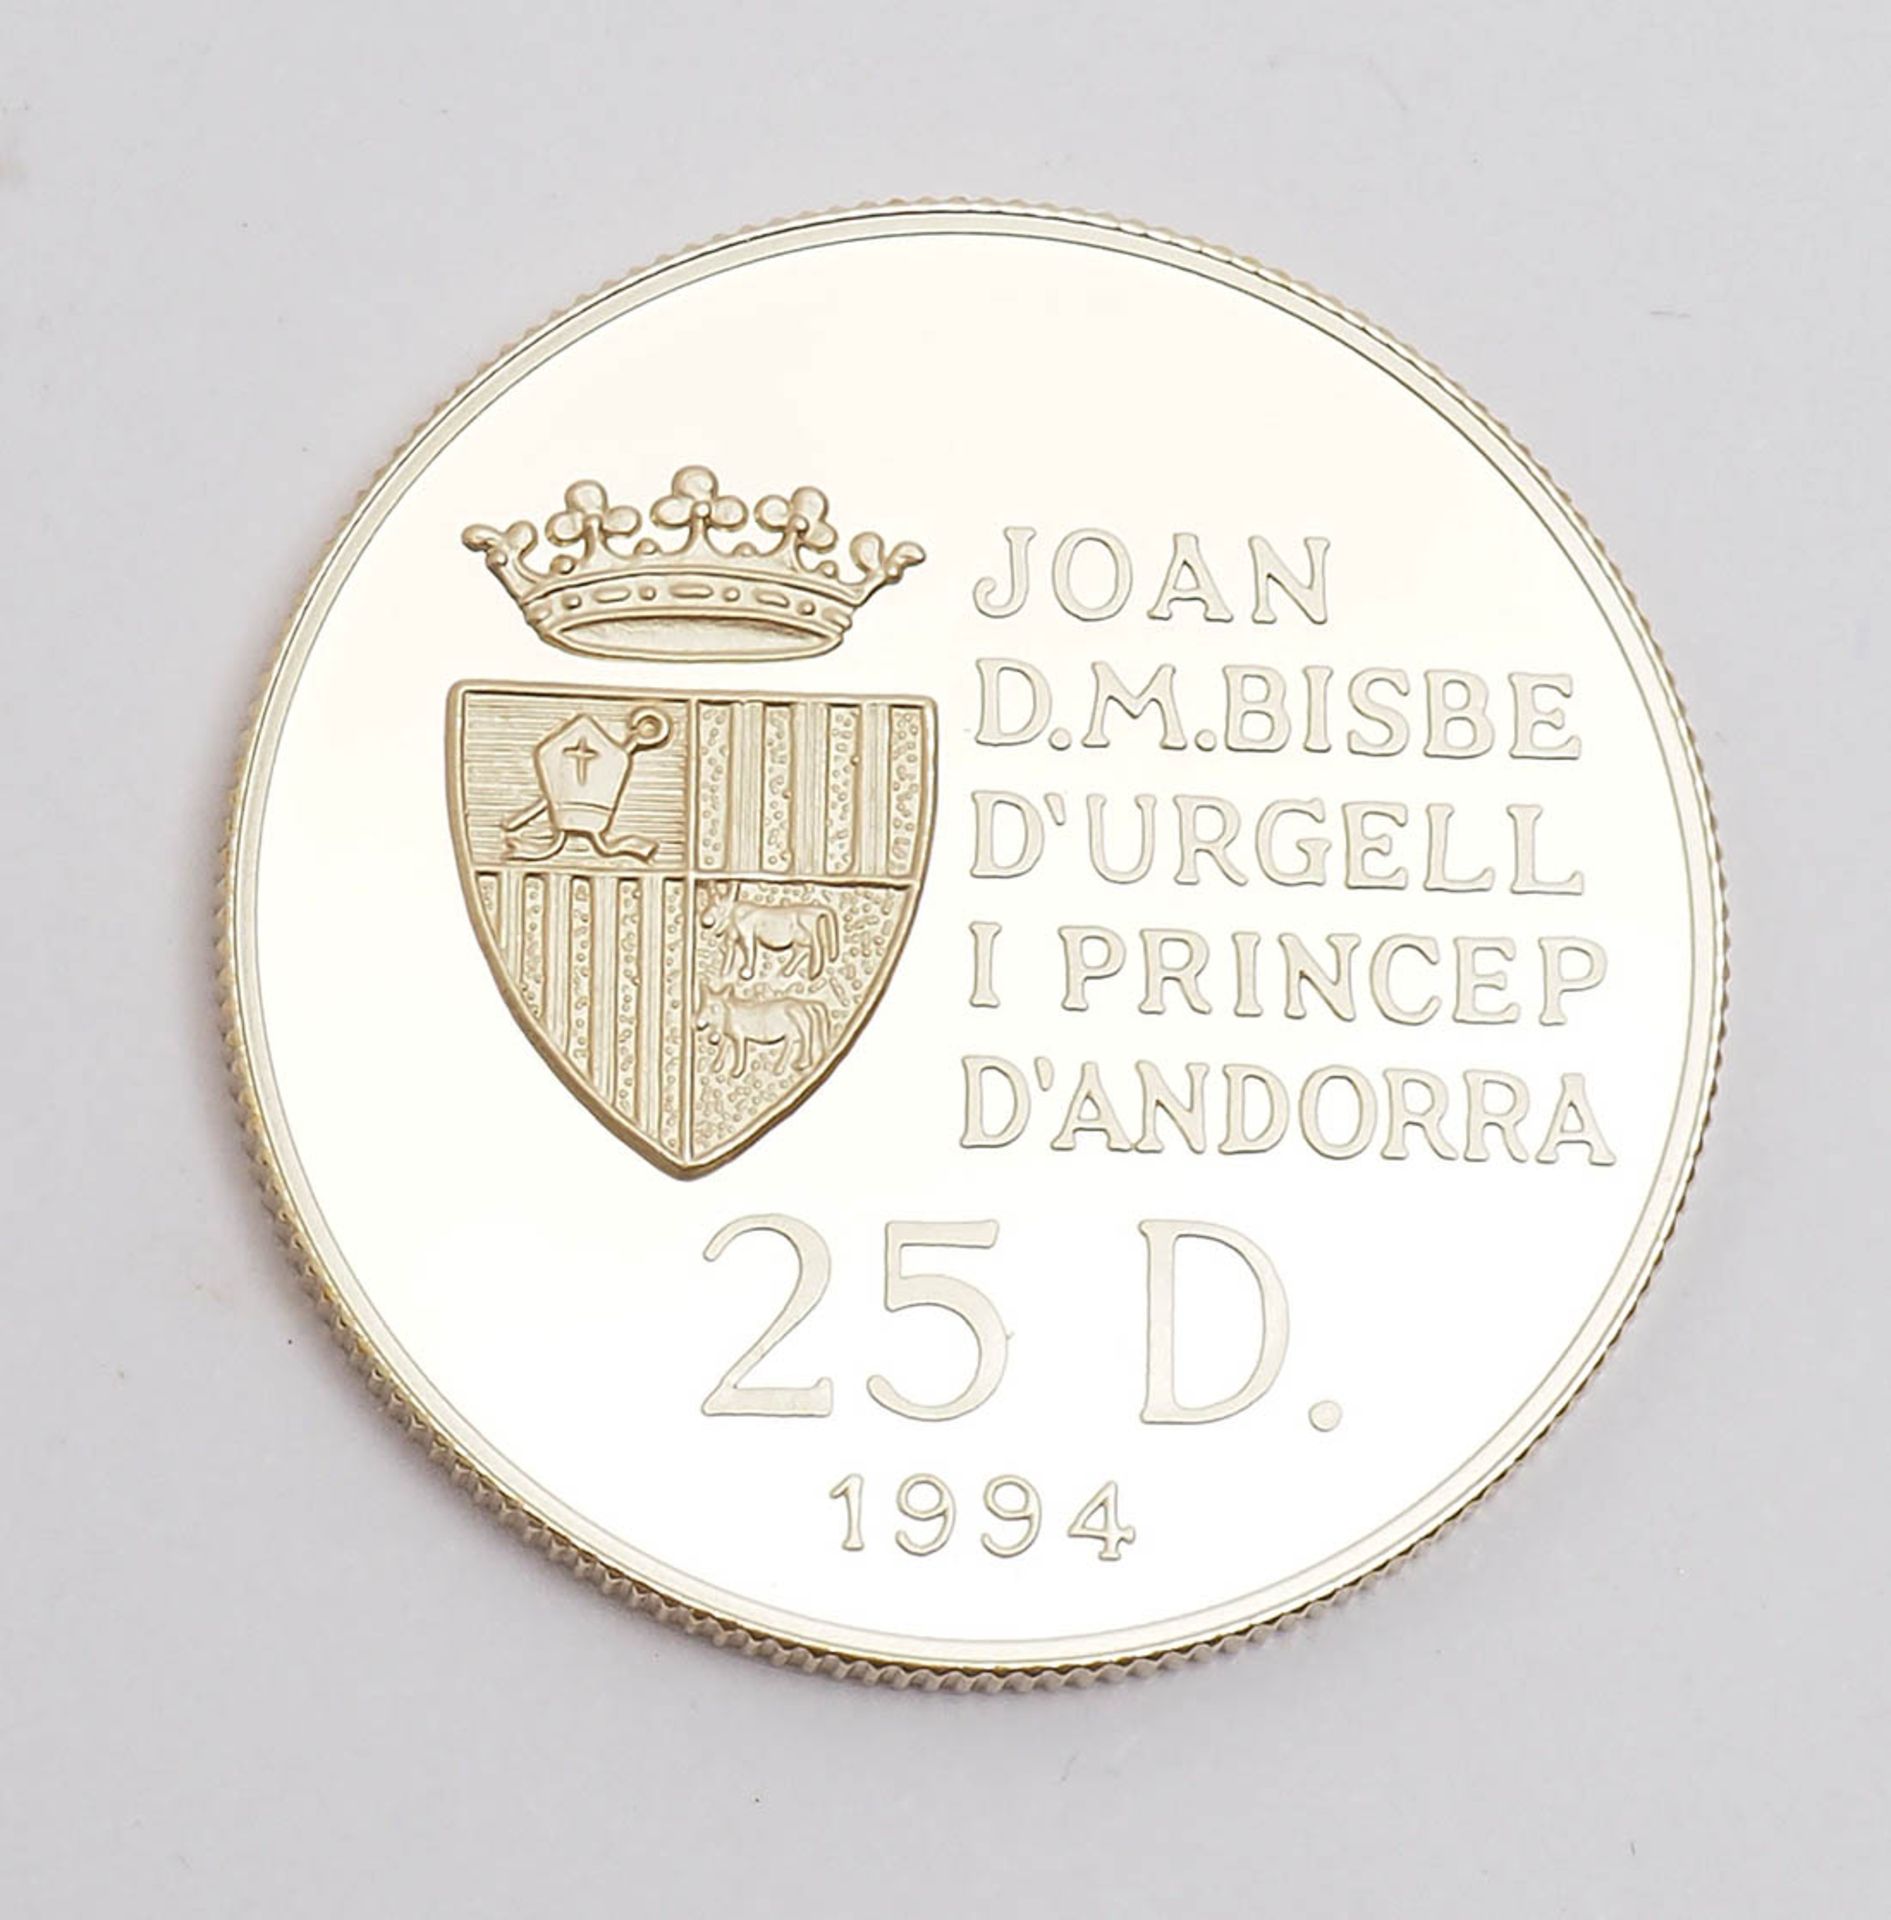 Goldmünze zu den olympischen Spielen 1994/96 Andorra, Nennwert 25 Diners. - Bild 3 aus 3